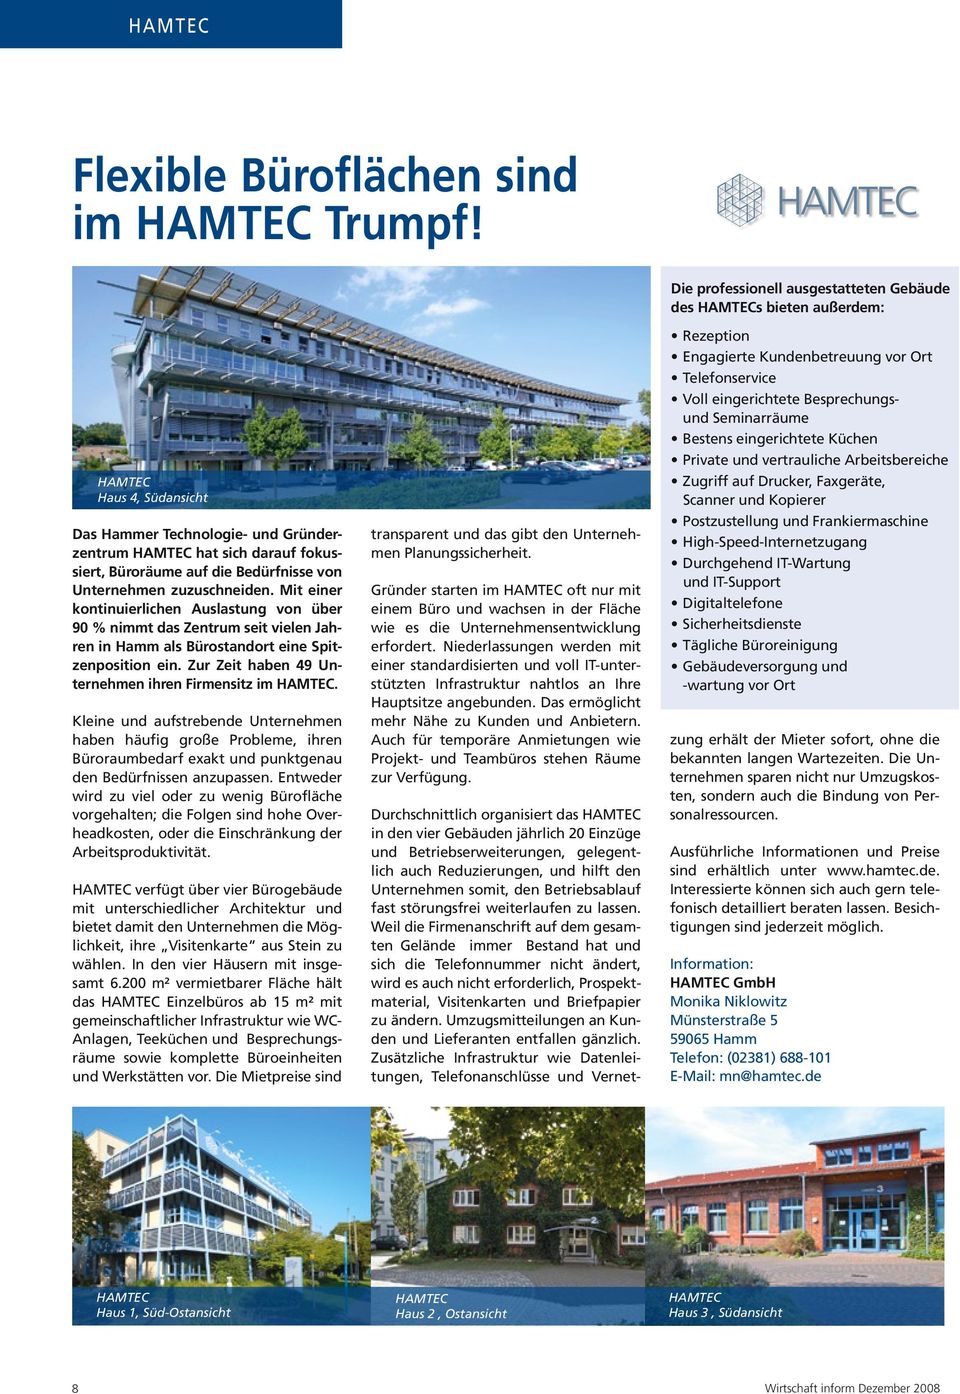 Mit einer kontinuierlichen Auslastung von über 90 % nimmt das Zentrum seit vielen Jahren in Hamm als Bürostandort eine Spitzenposition ein. Zur Zeit haben 49 Unternehmen ihren Firmensitz im HAMTEC.